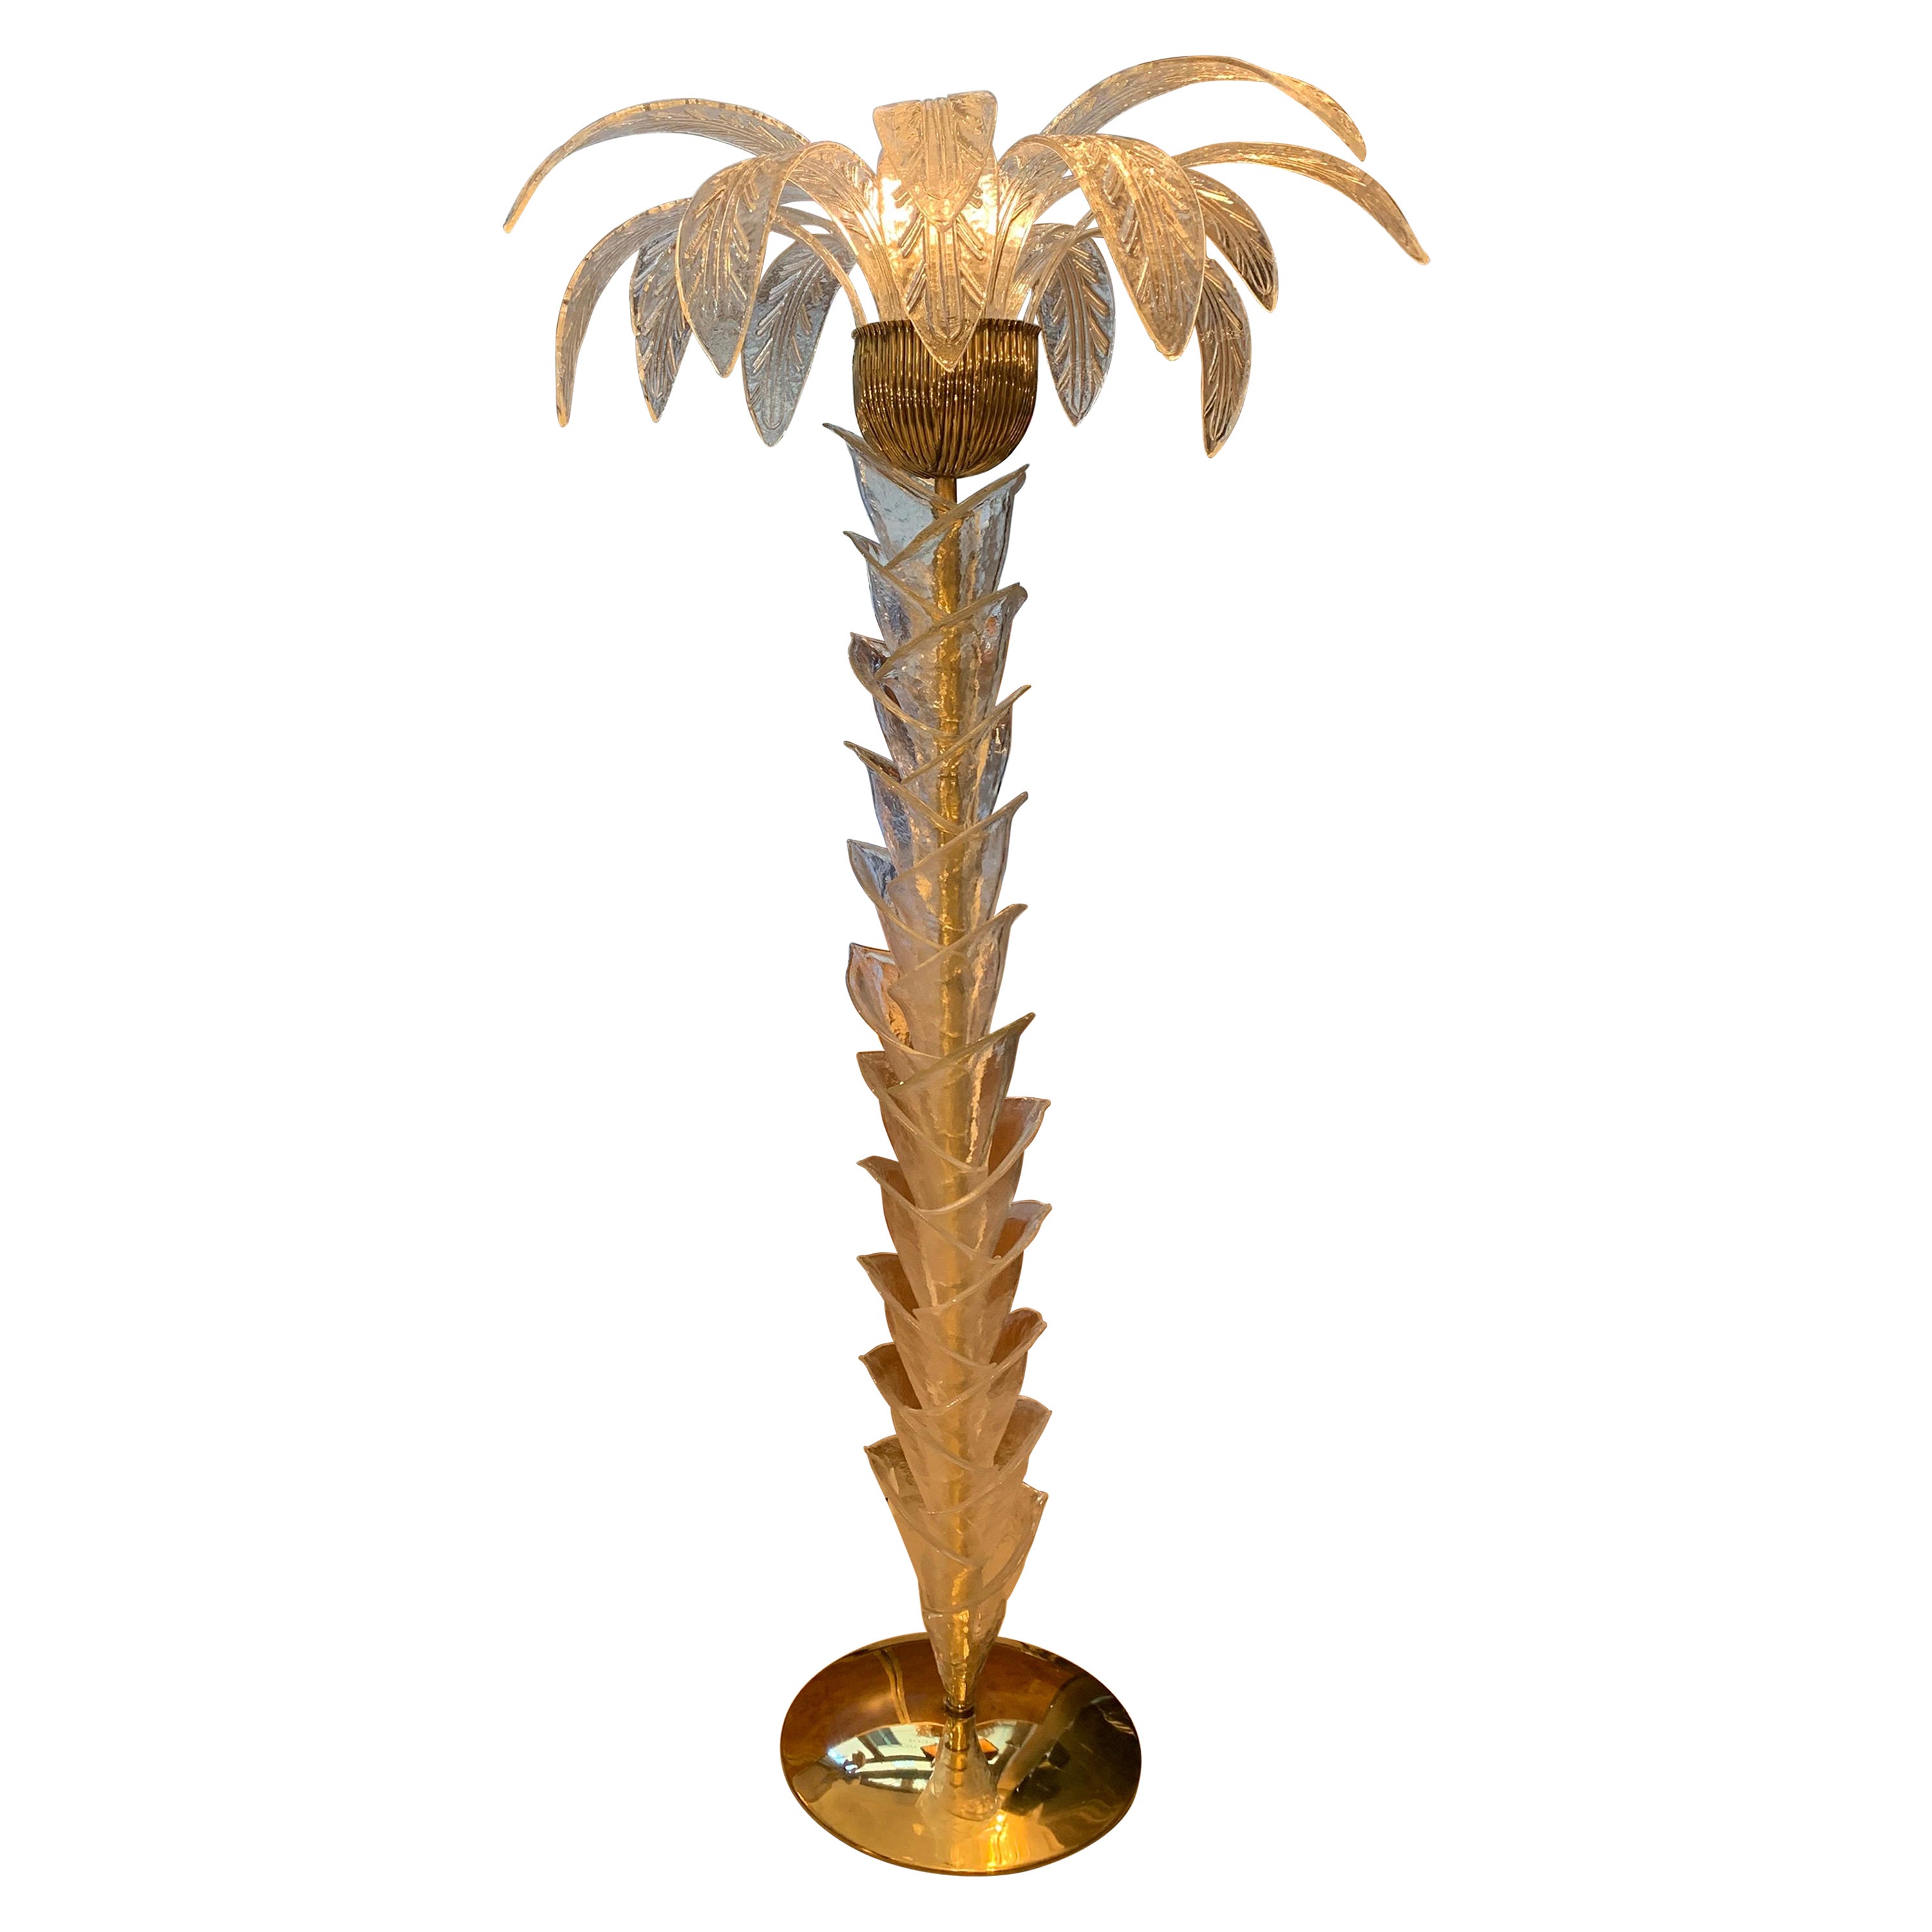 Lampadaire palmier en verre transparent de Murano, base et ferrures en laiton, trois ampoules. Le lampadaire est également une sculpture qui reproduit le tronc et les feuilles d'un palmier avec des pièces en verre de Murano soufflé à la main.
  